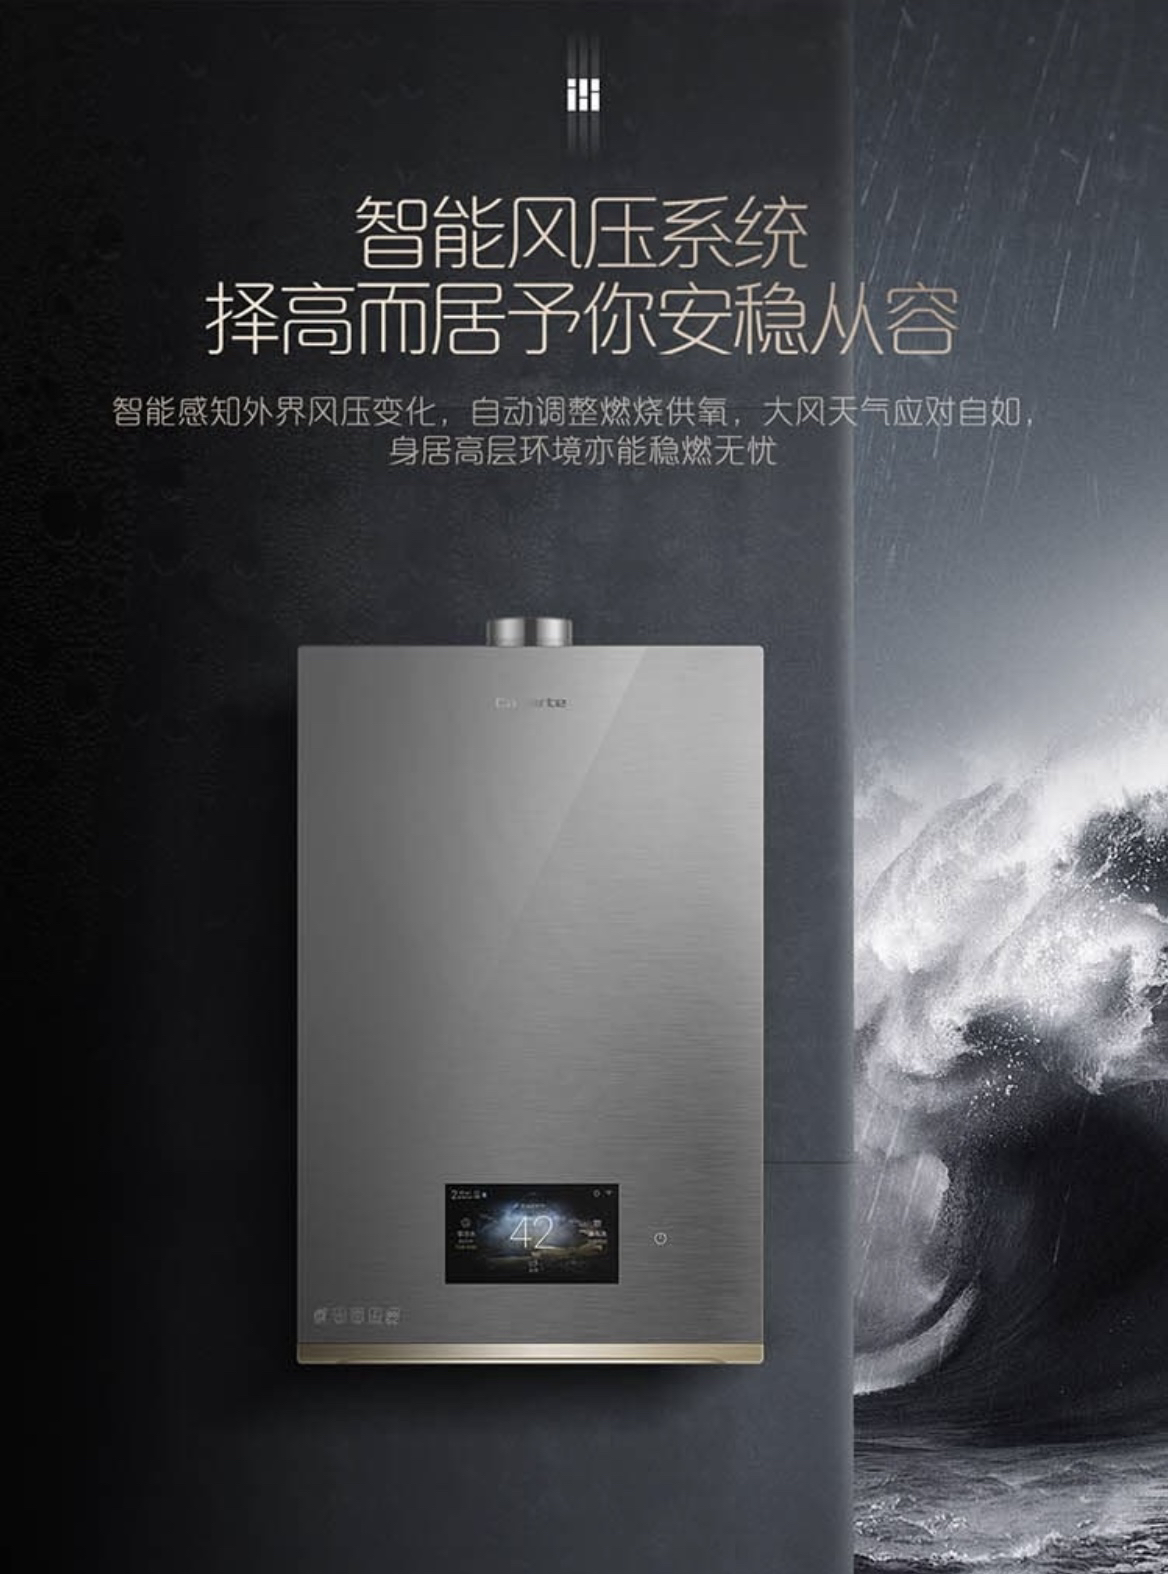 卡萨帝热水器广告图片